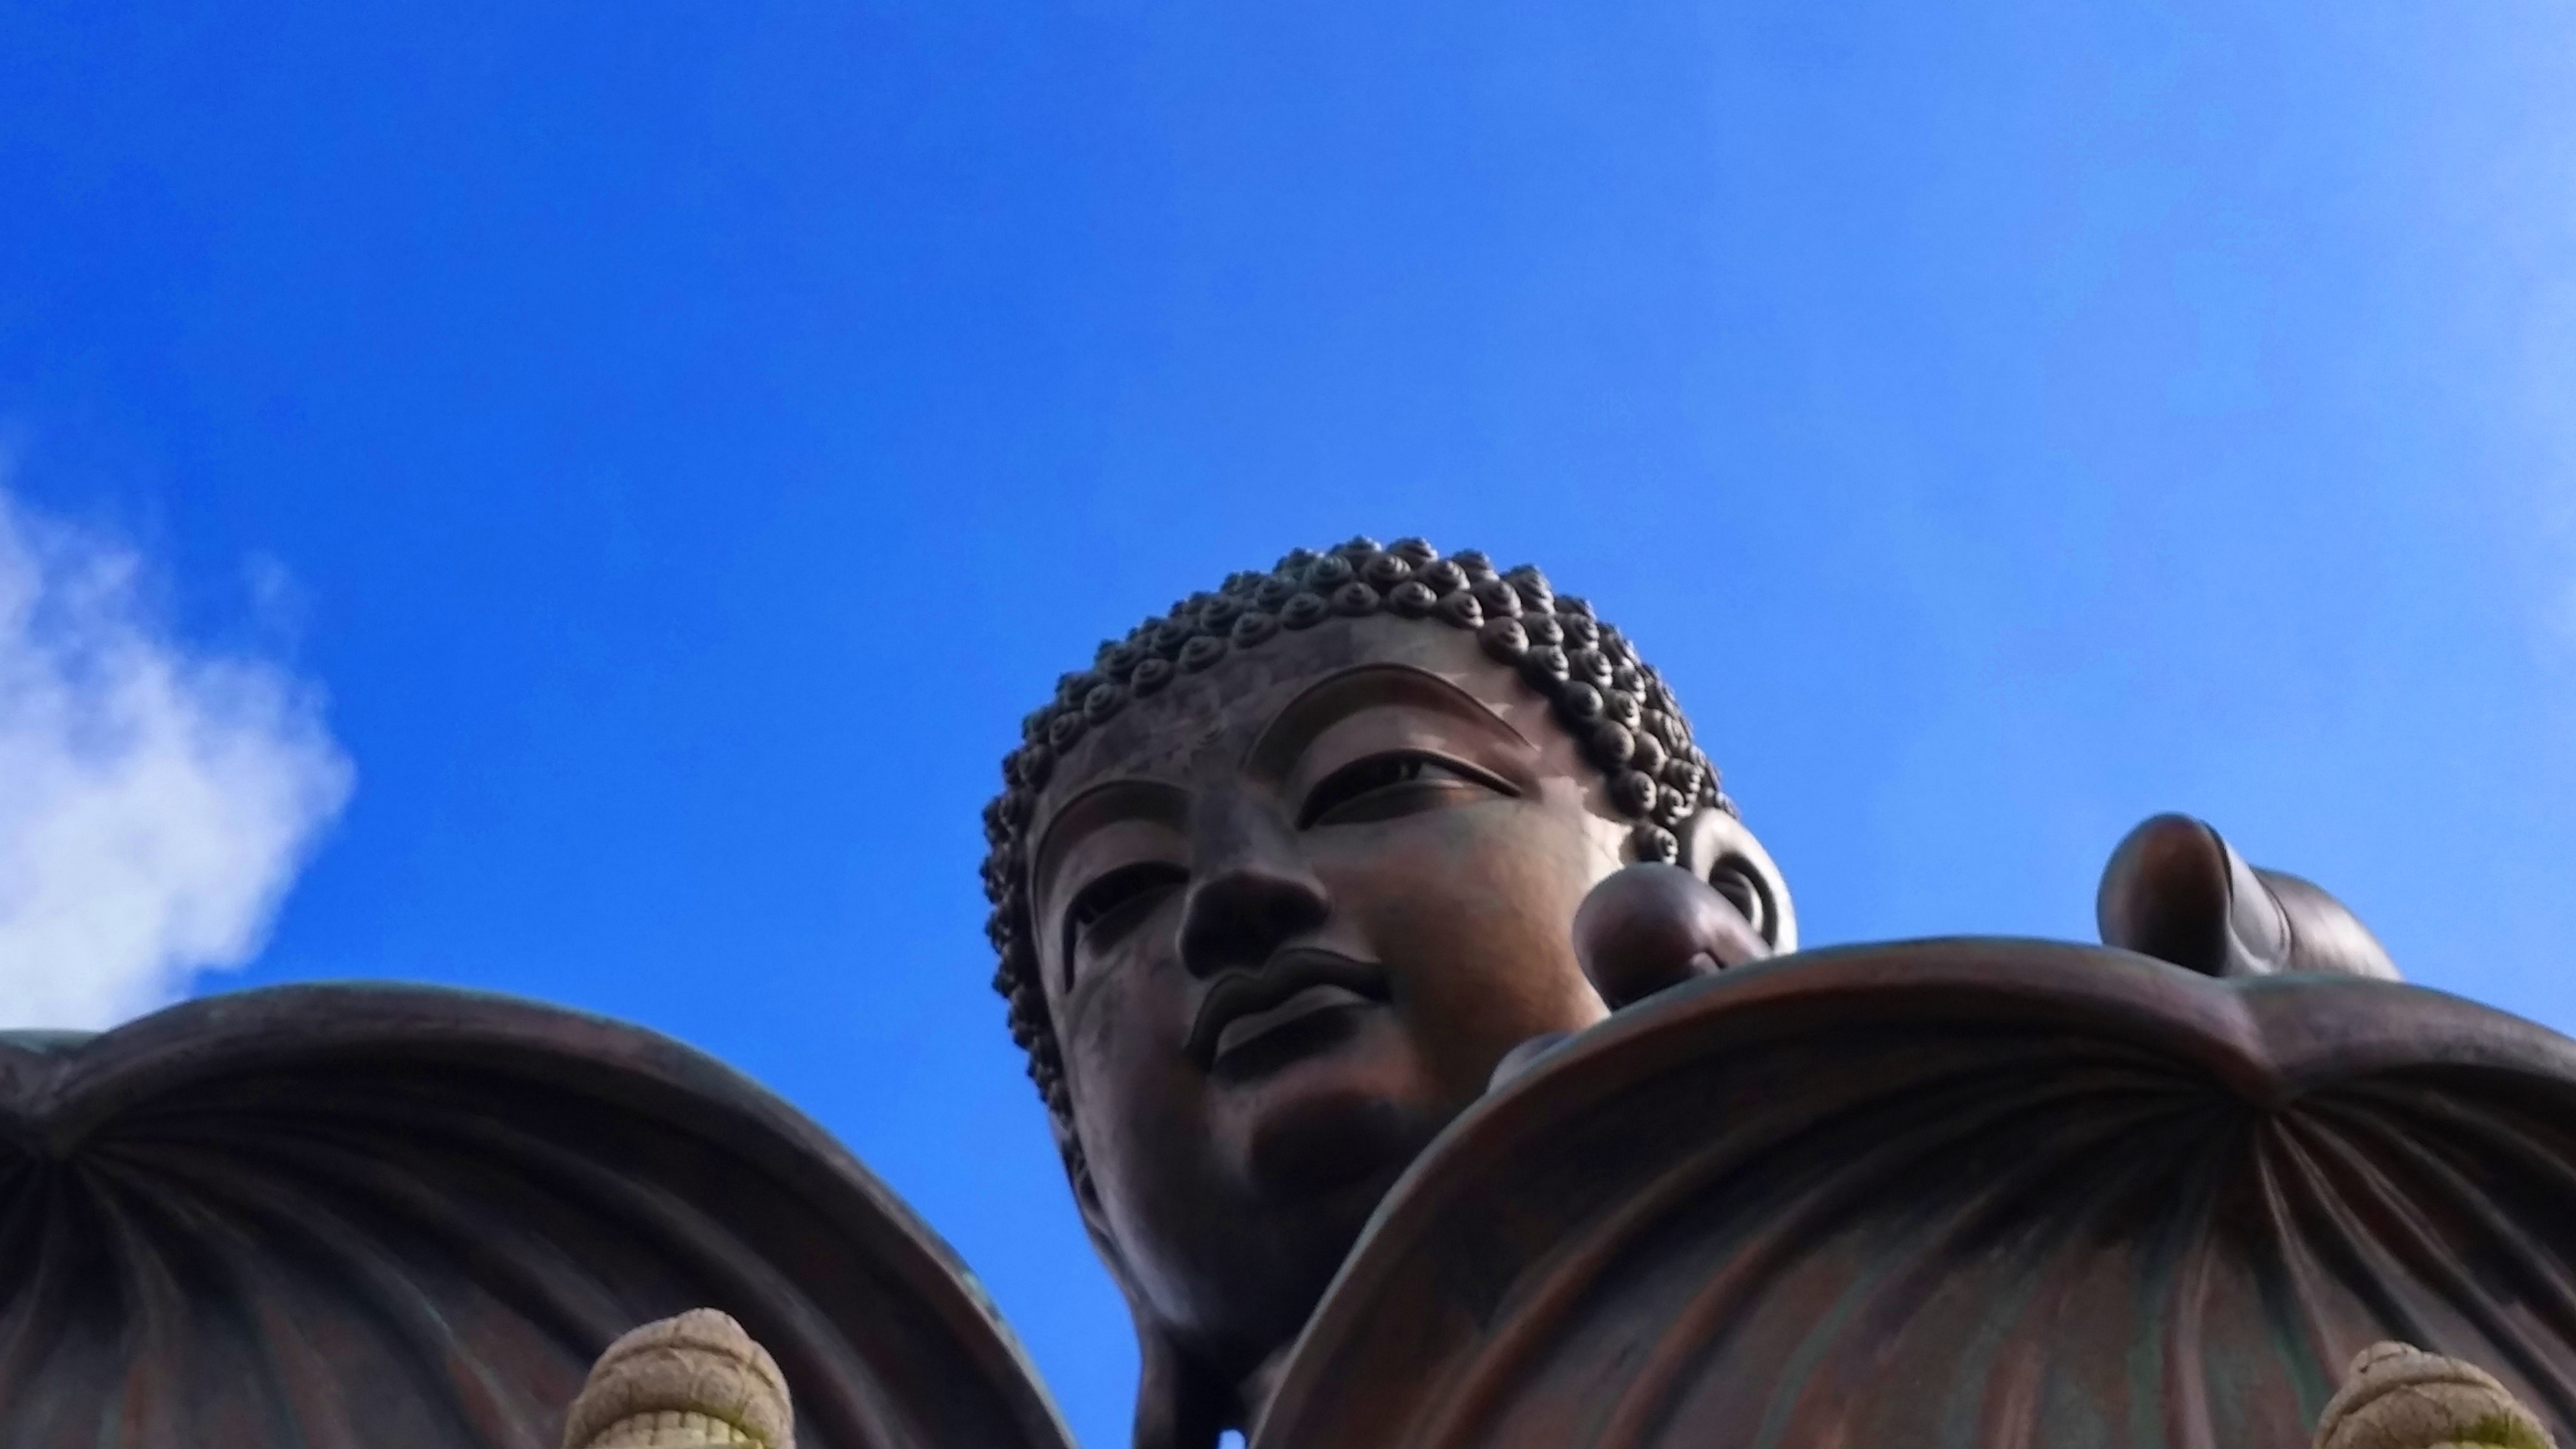 Big-Buddha-close-up